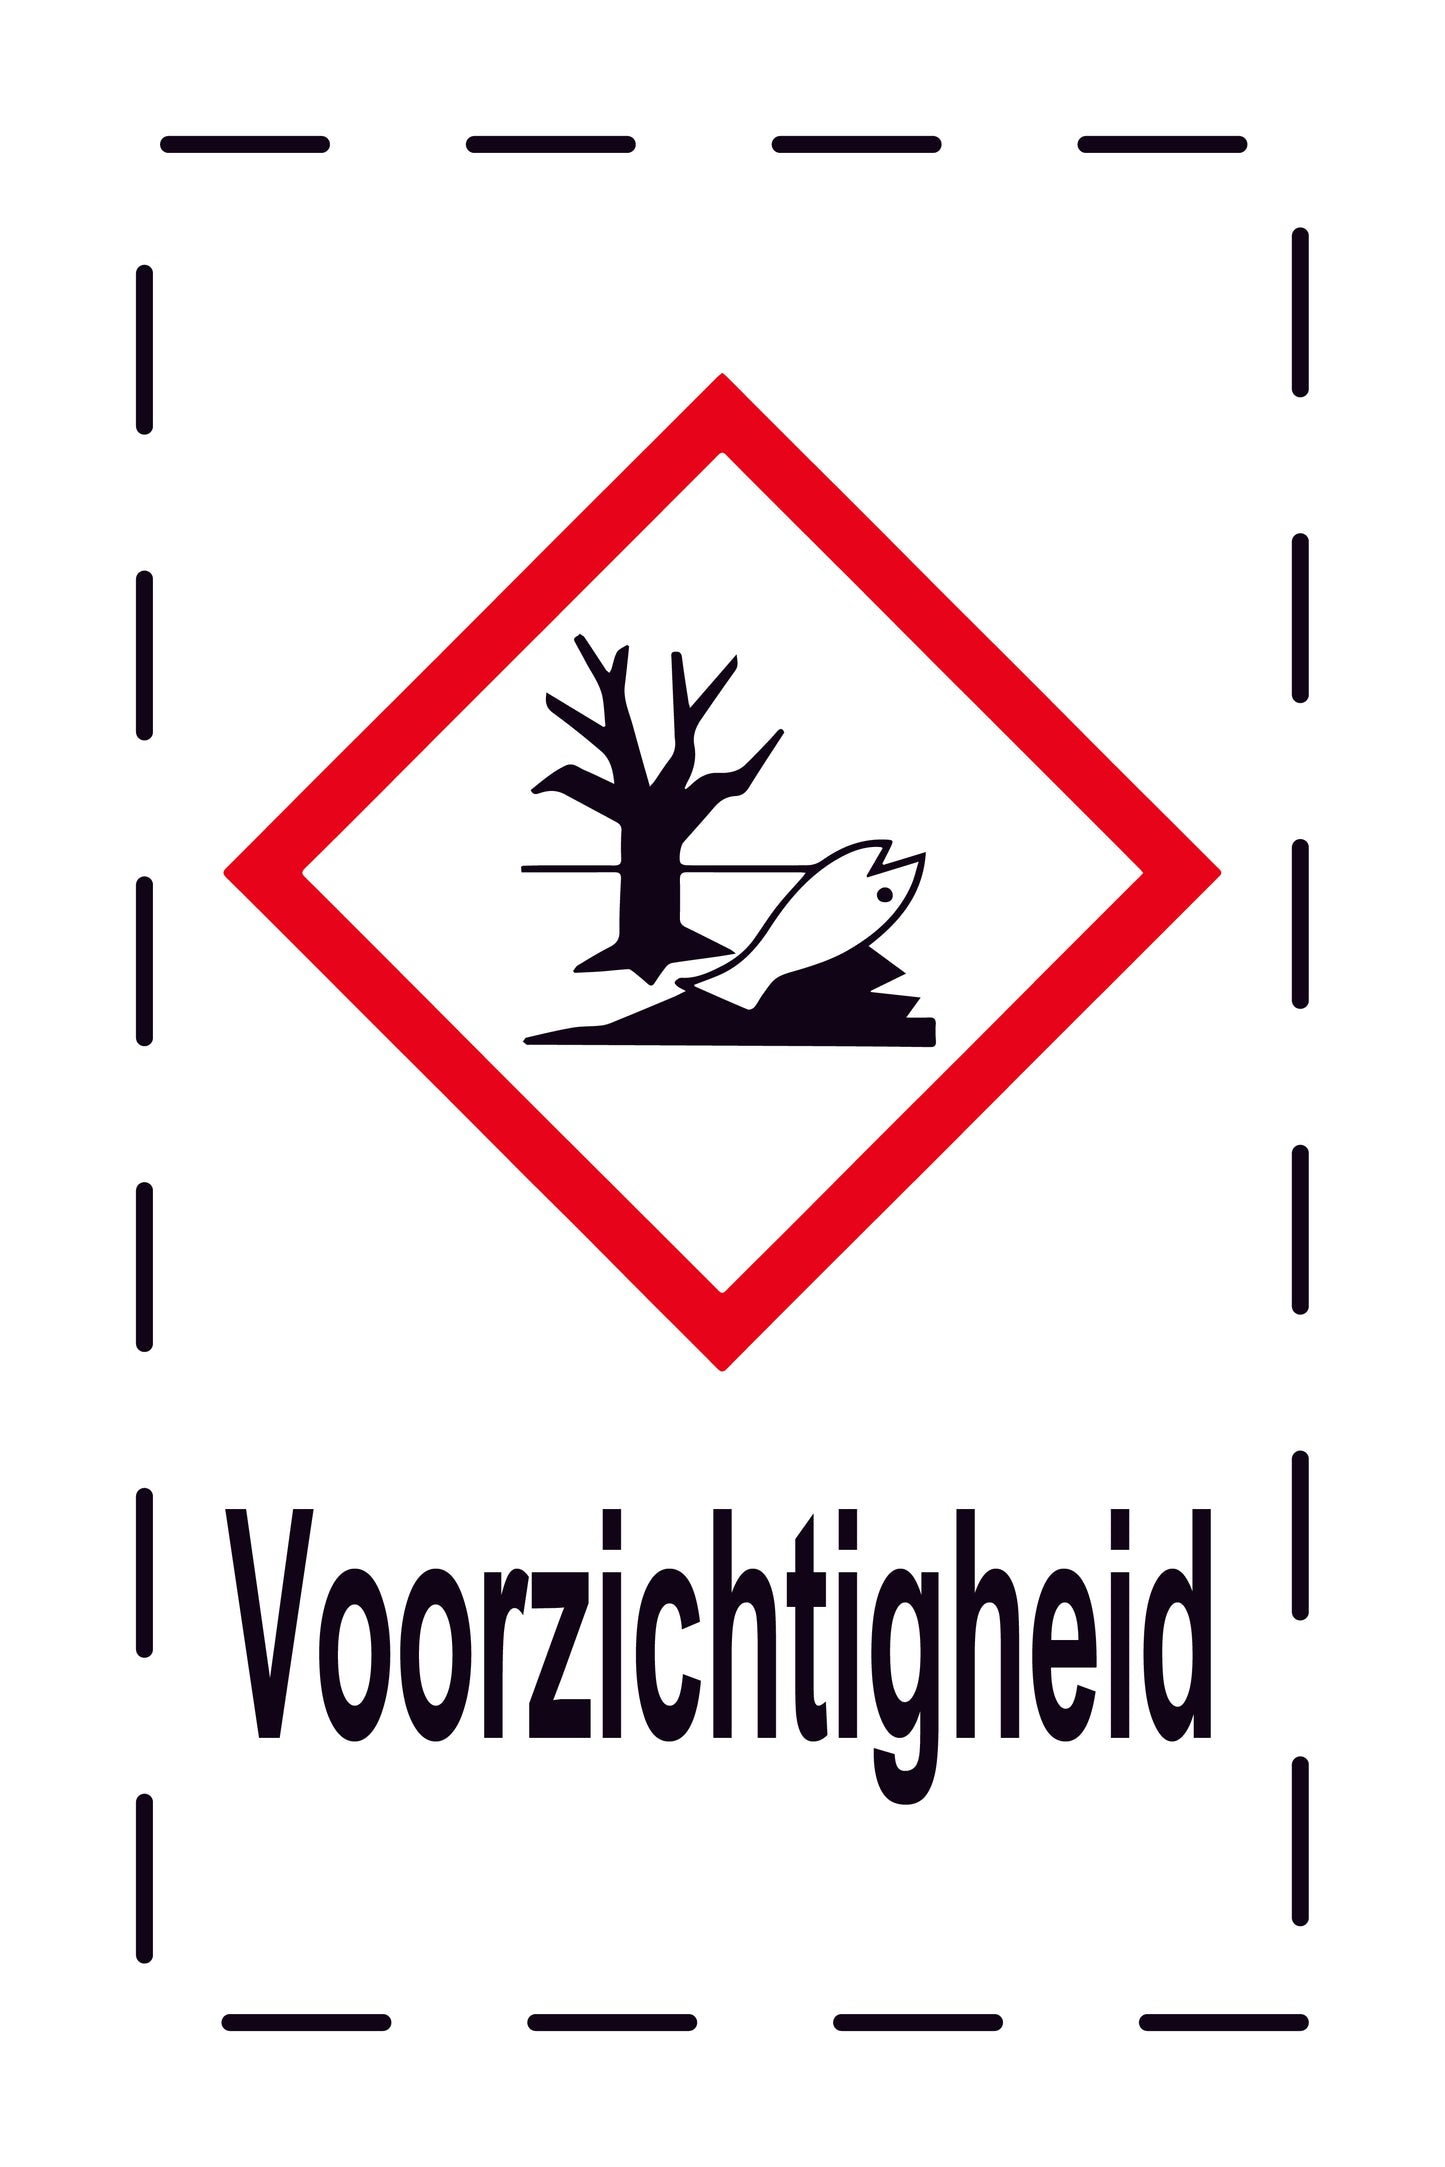 1000 stickers "Voorzichtigheid Schadelijk voor milieu" 2,4x3,9 cm tot 15x24 cm, gemaakt van papier of kunststof ES-GHS-09-Voorzichtigheid